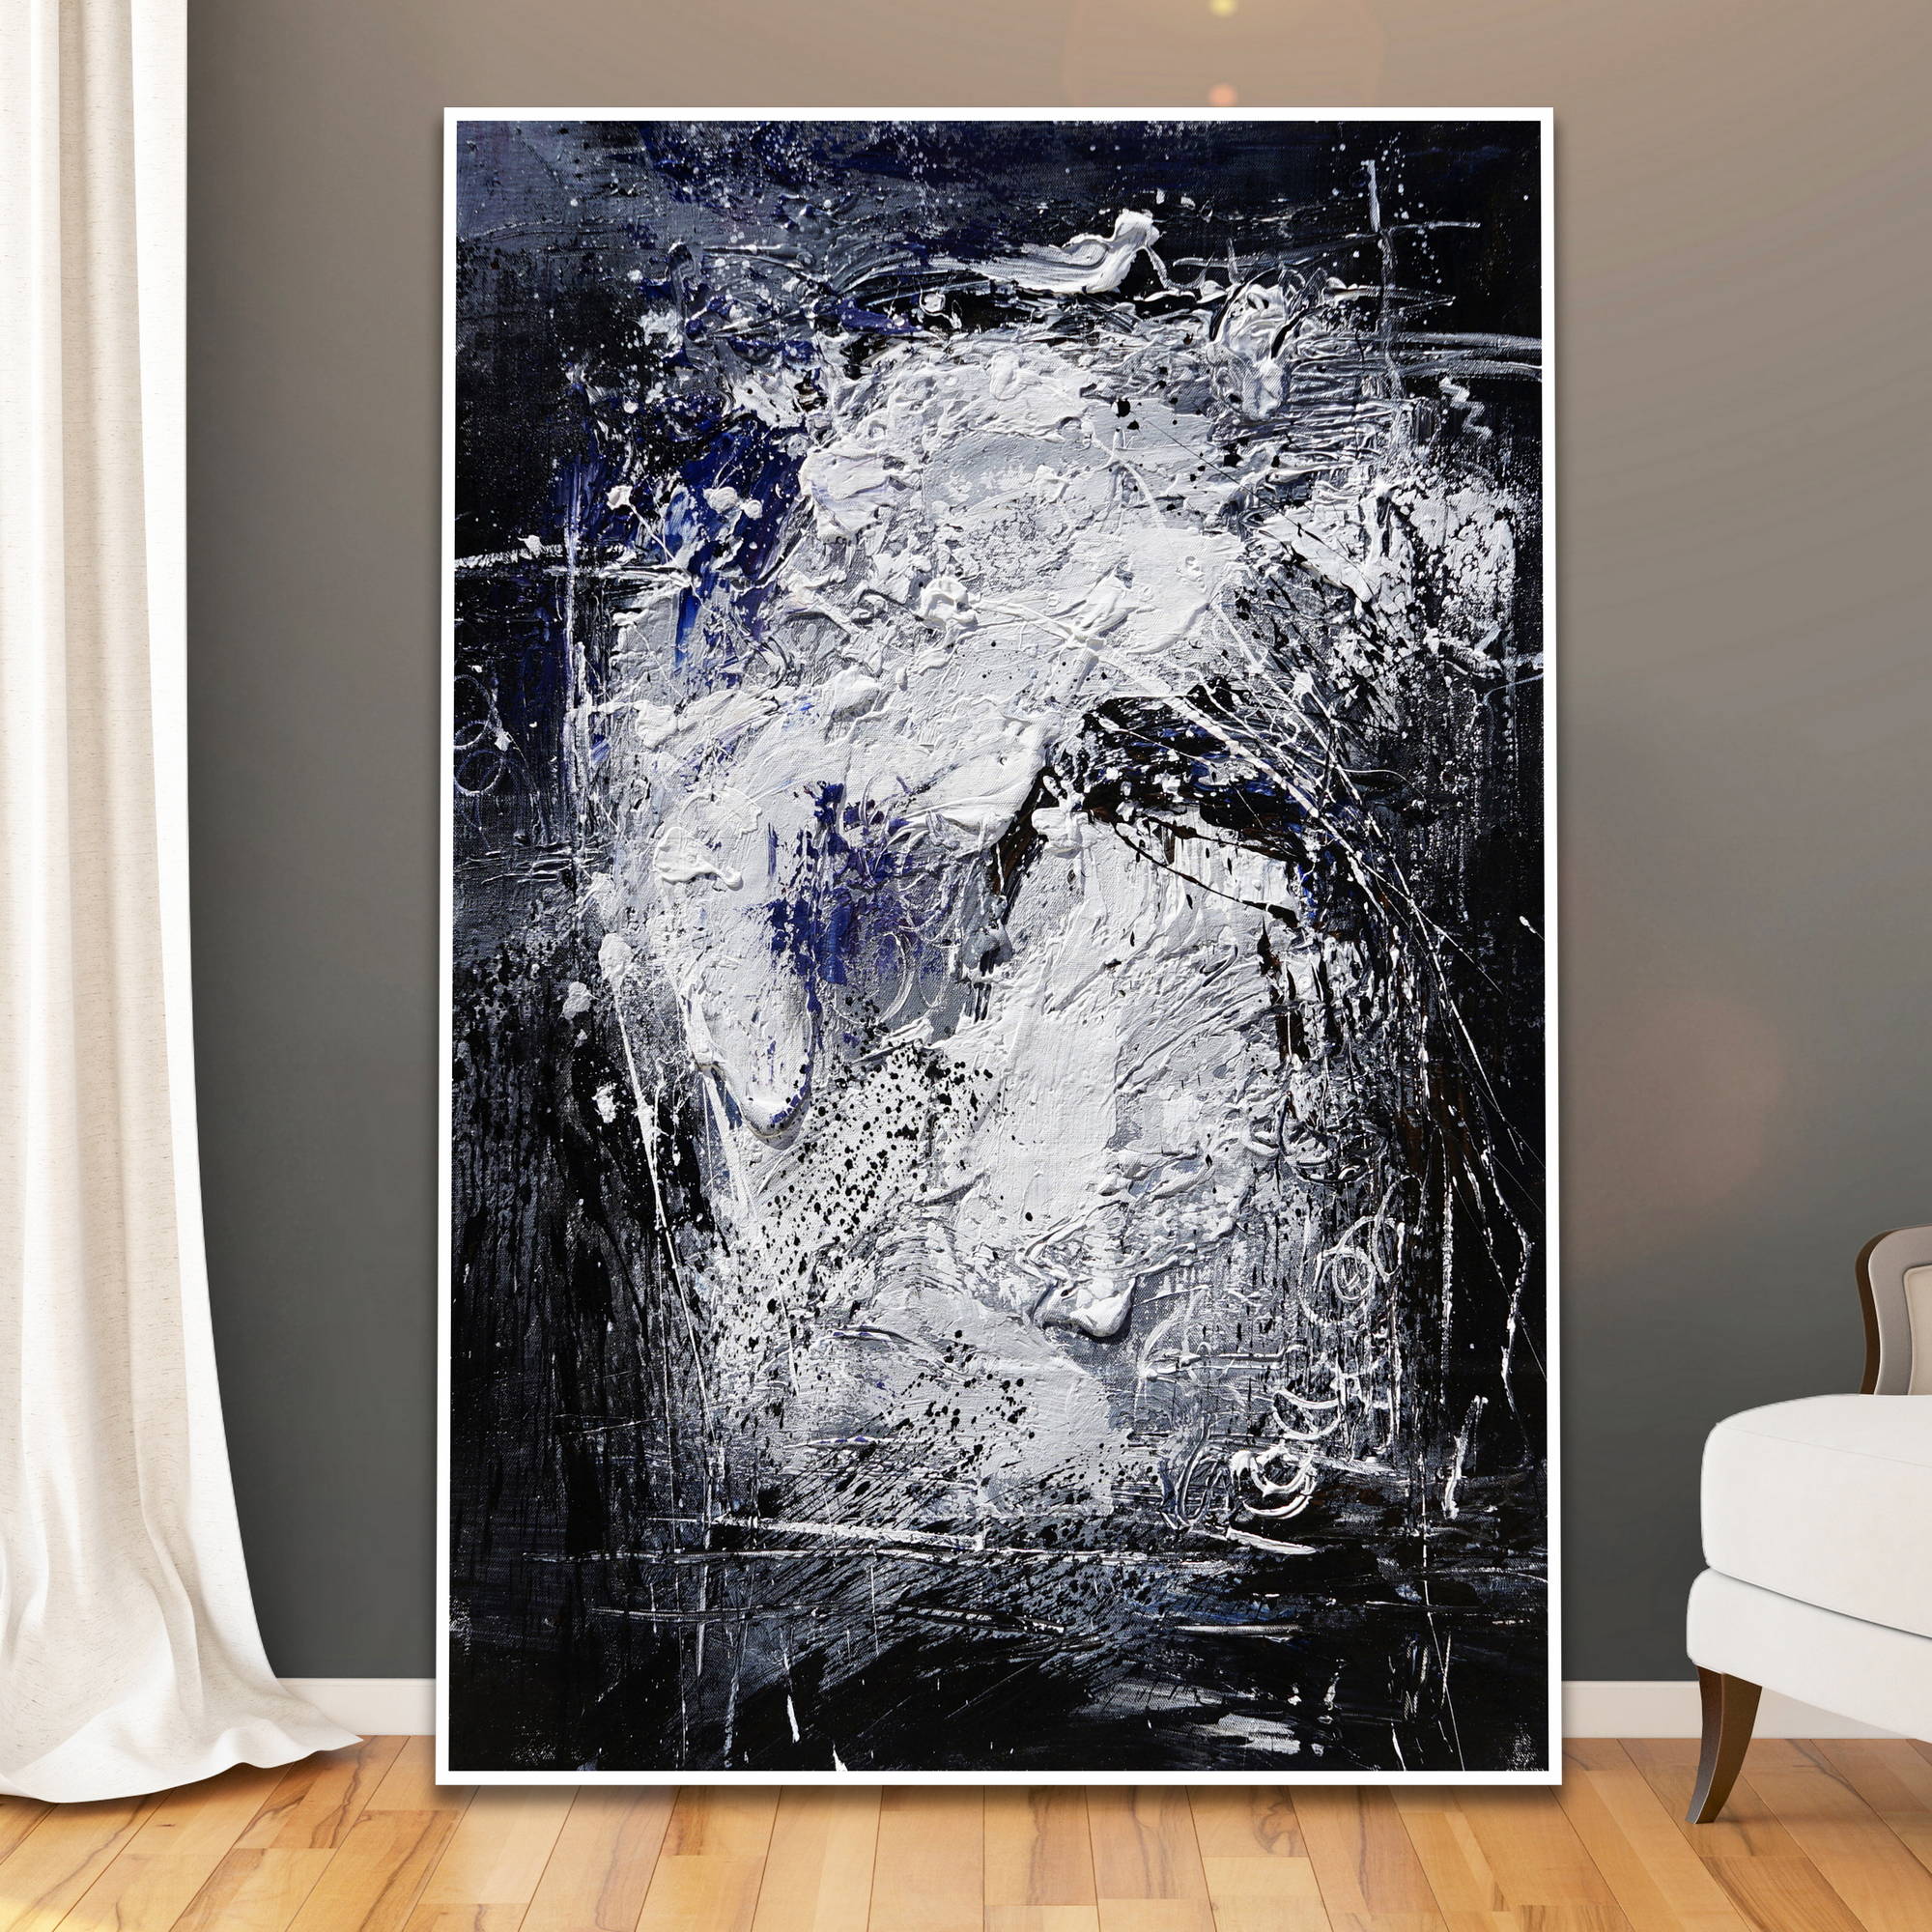 Dipinto astratto con ricche texture in bianco e blu su sfonto nero